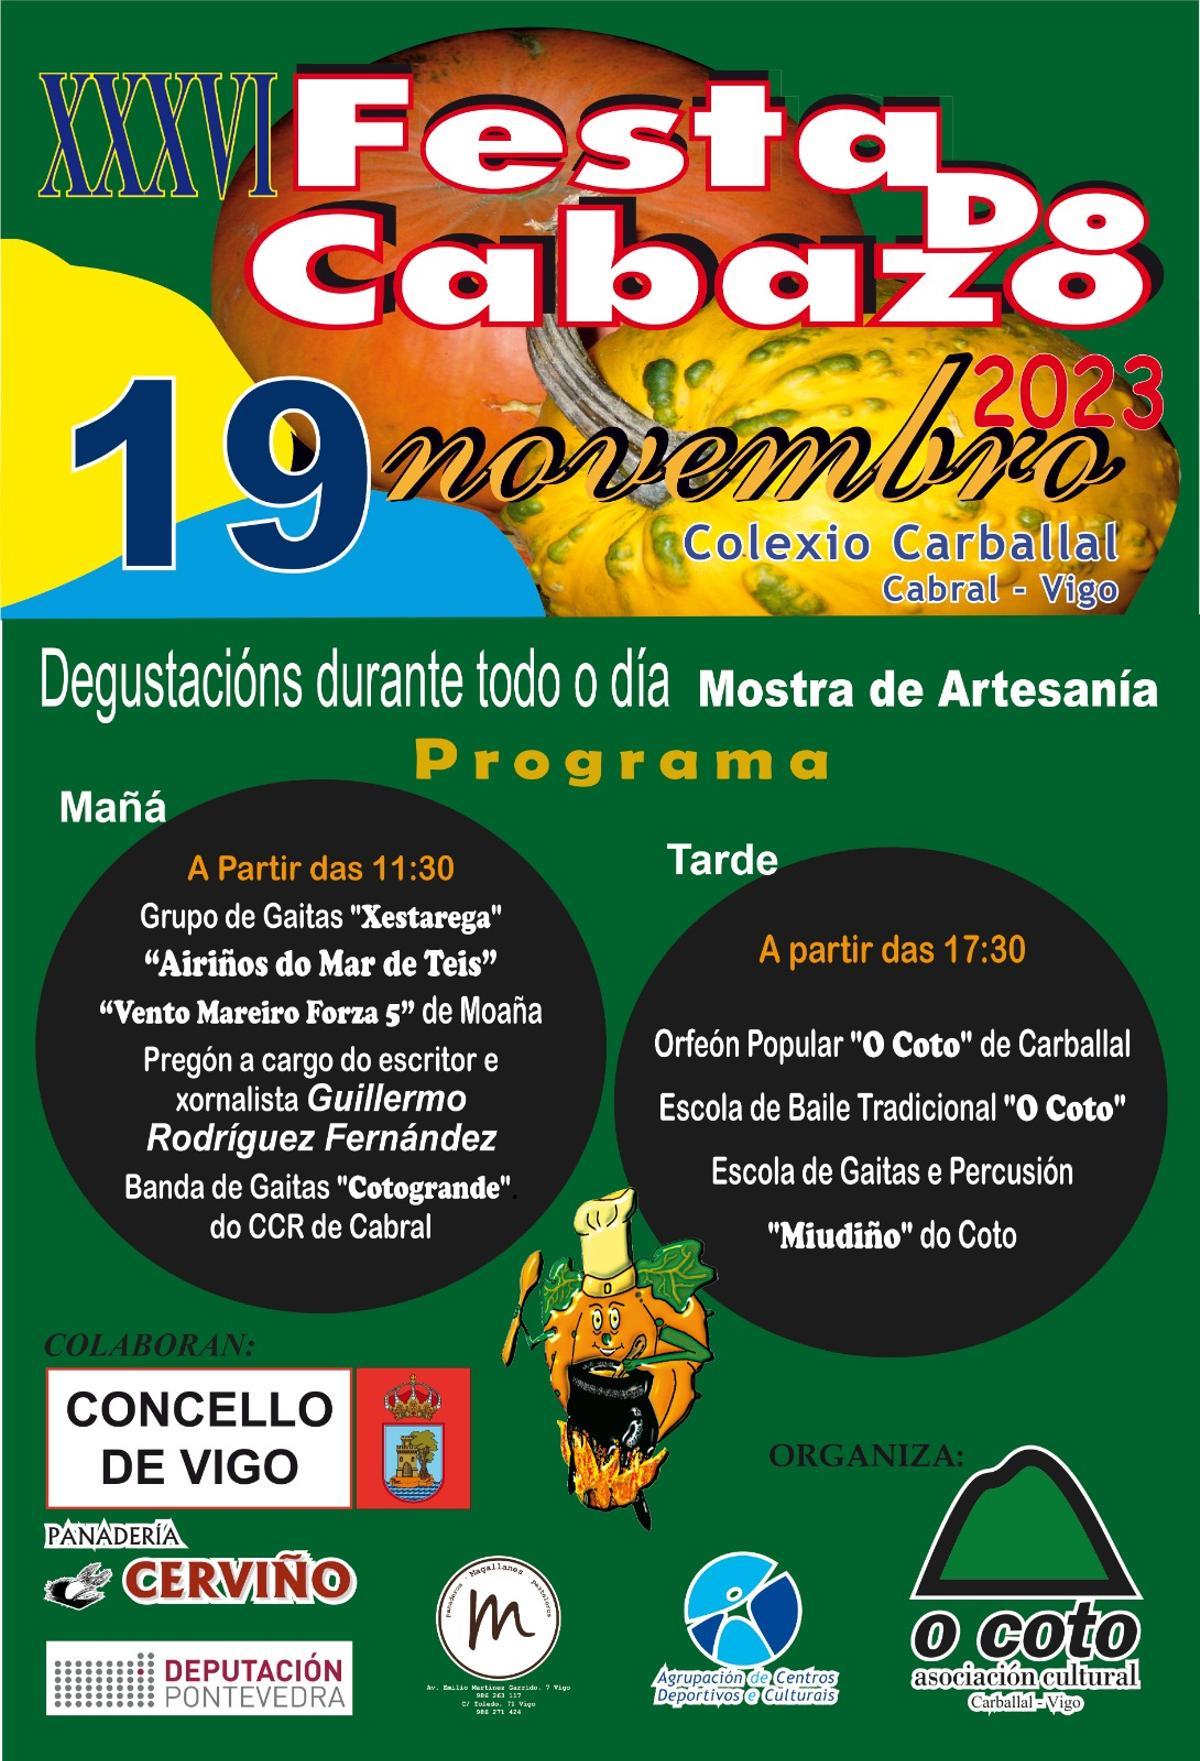 Programa de la XXXVI edición de la Festa do Cabazo.